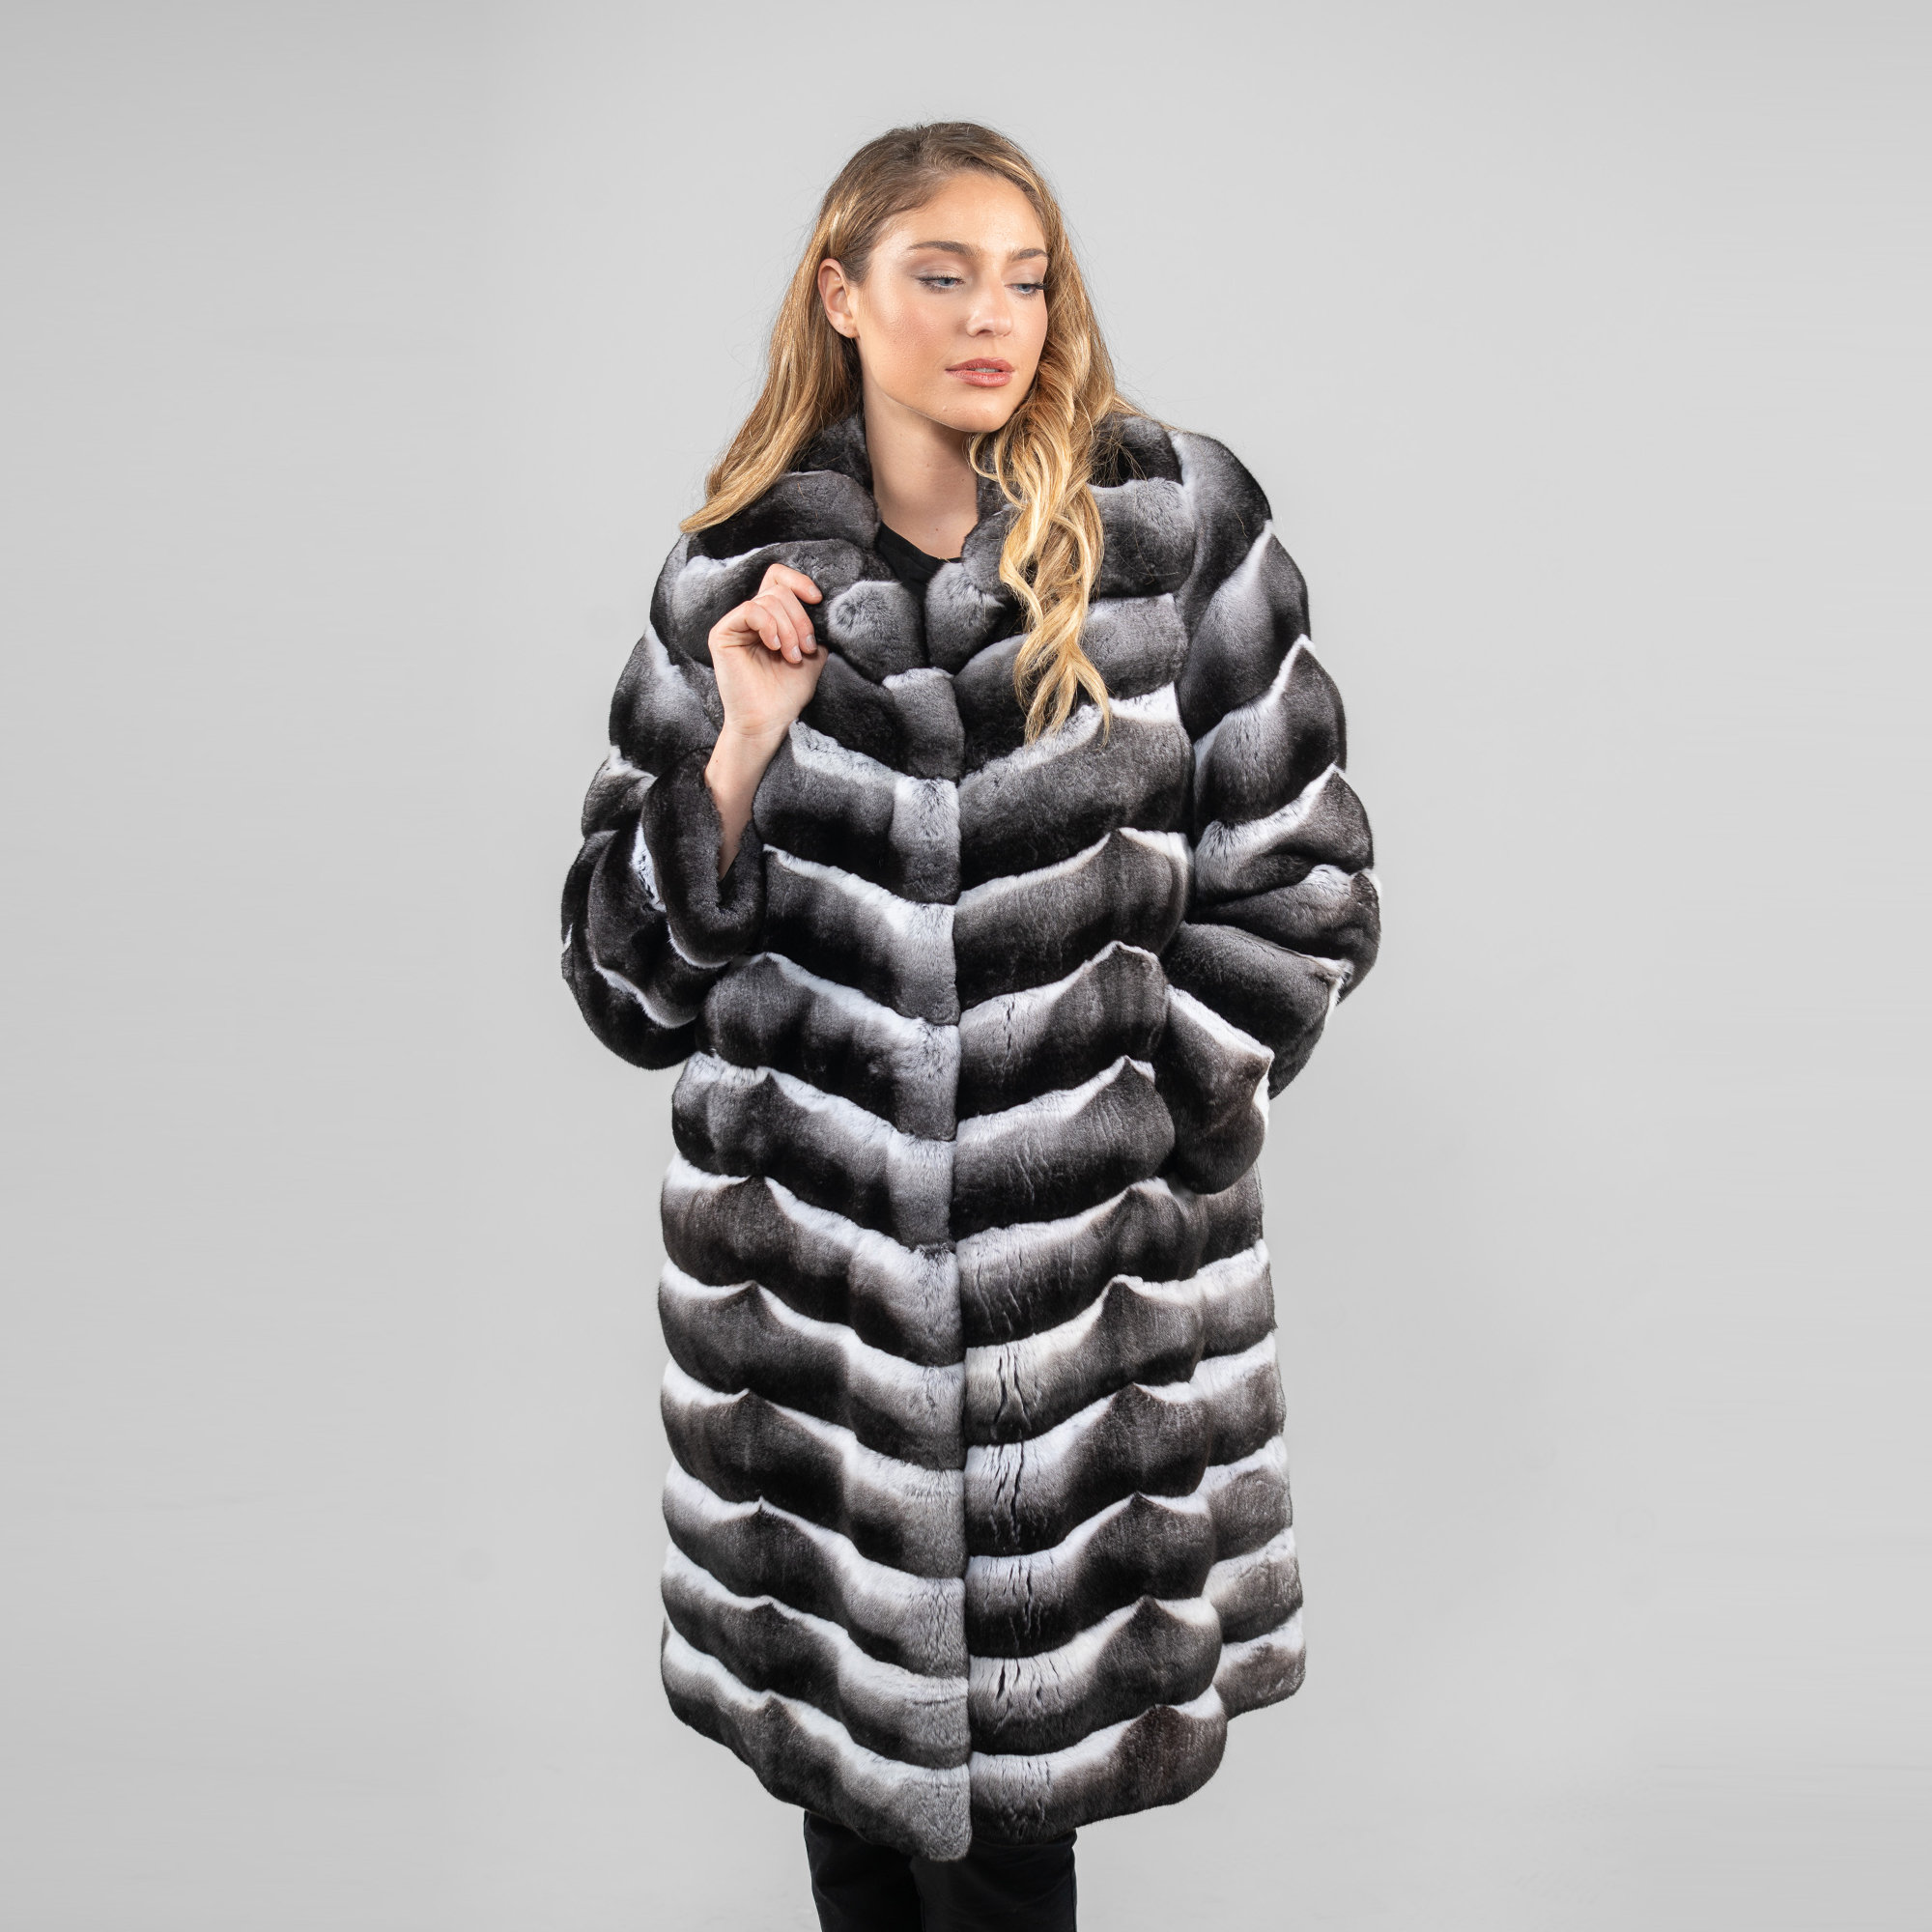 Chinchilla fur coat in gray color